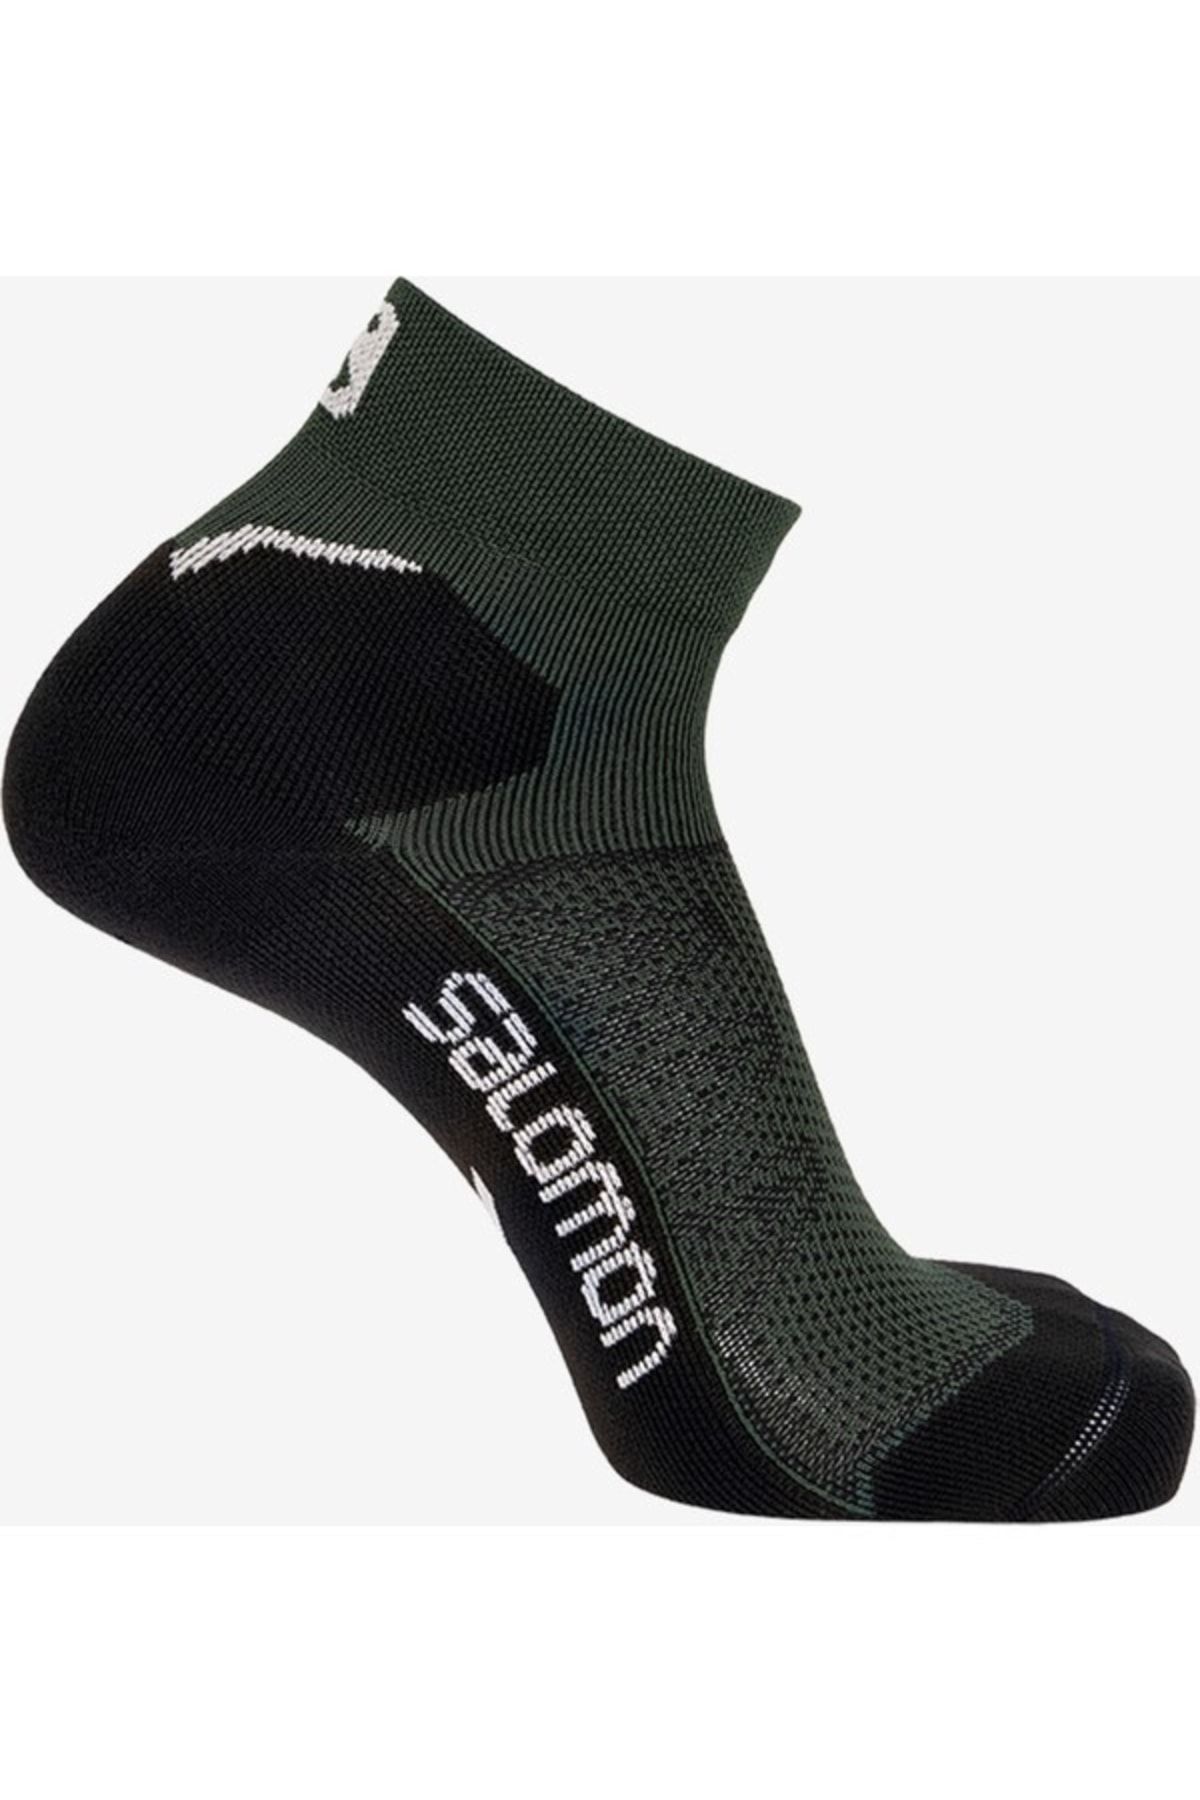 Salomon Çorap Speedcross Ankle Dx Sx Lc1781100